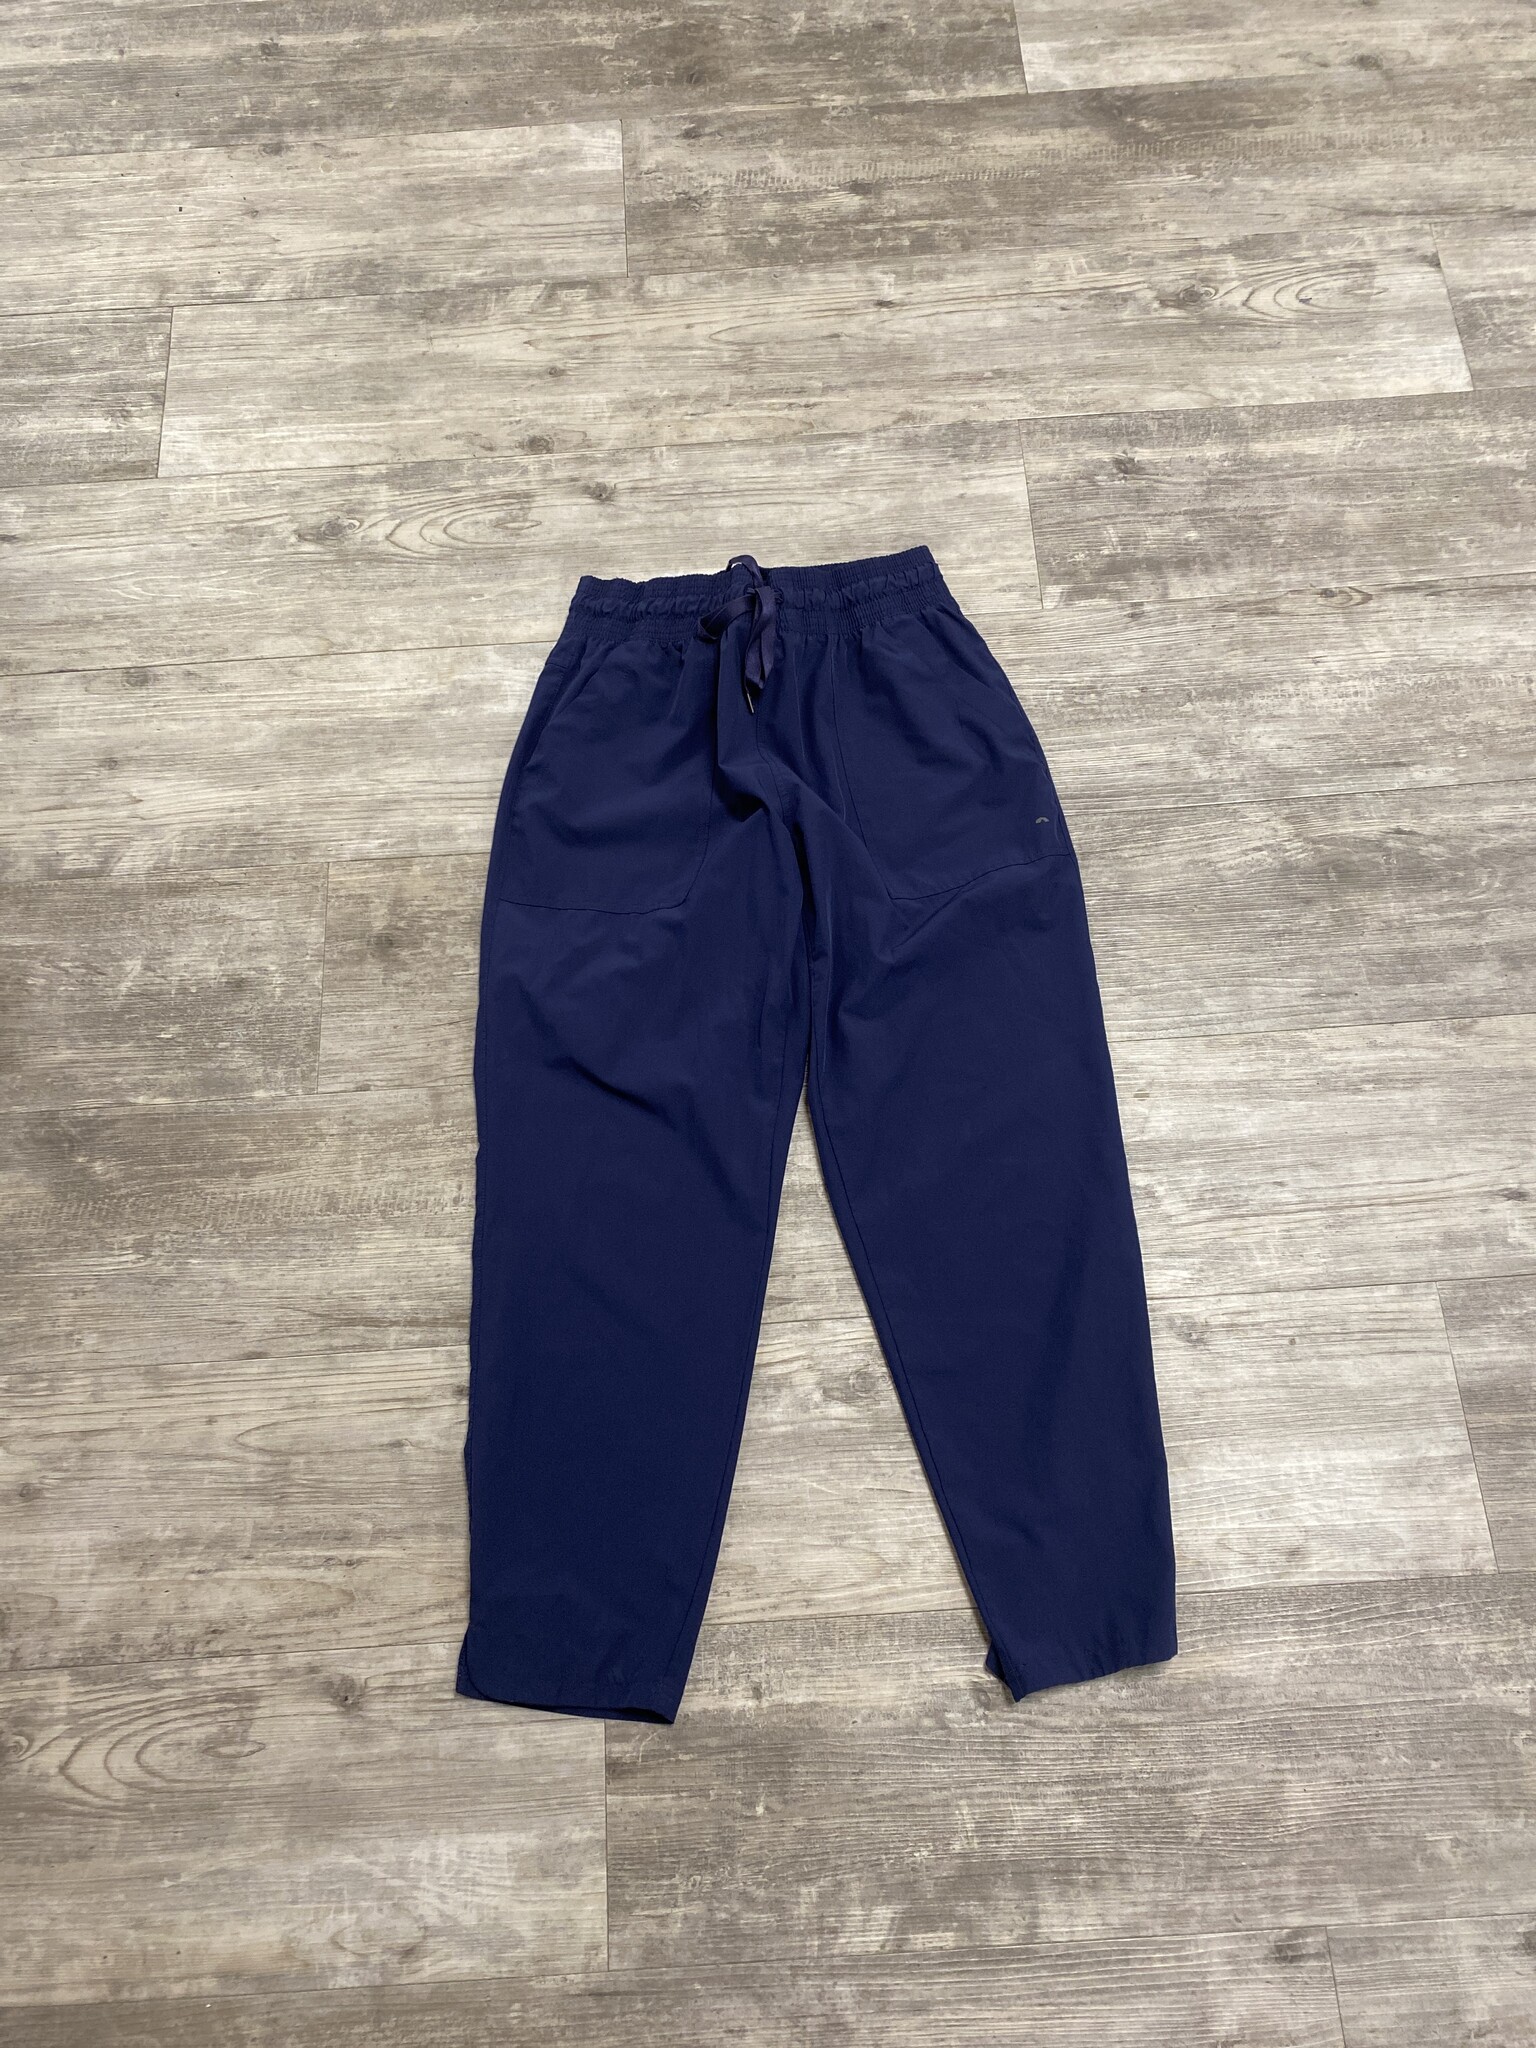 Blue Athletic Pants Size L